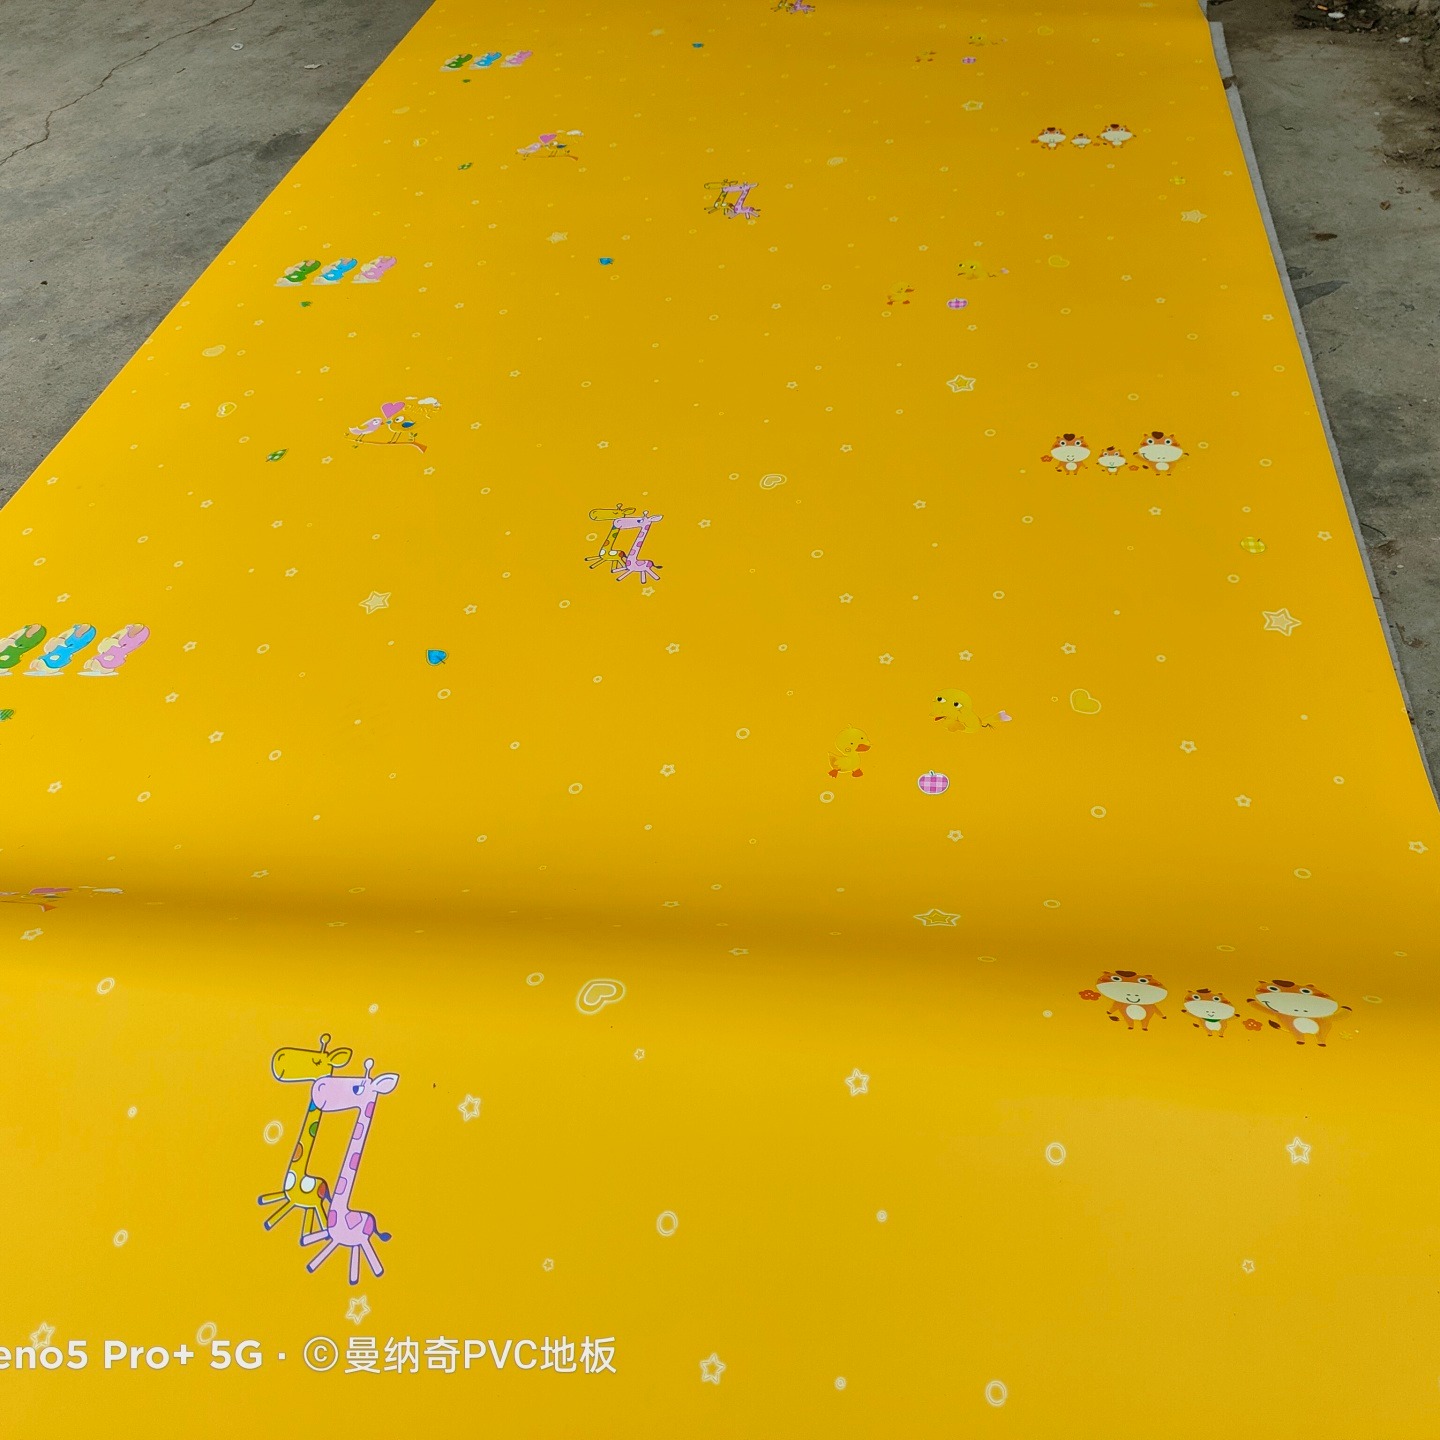 镇雄幼儿园塑胶地板 幼儿园塑胶地板施工 镇雄塑胶地板铺装 镇雄塑胶地板铺装厂家图片